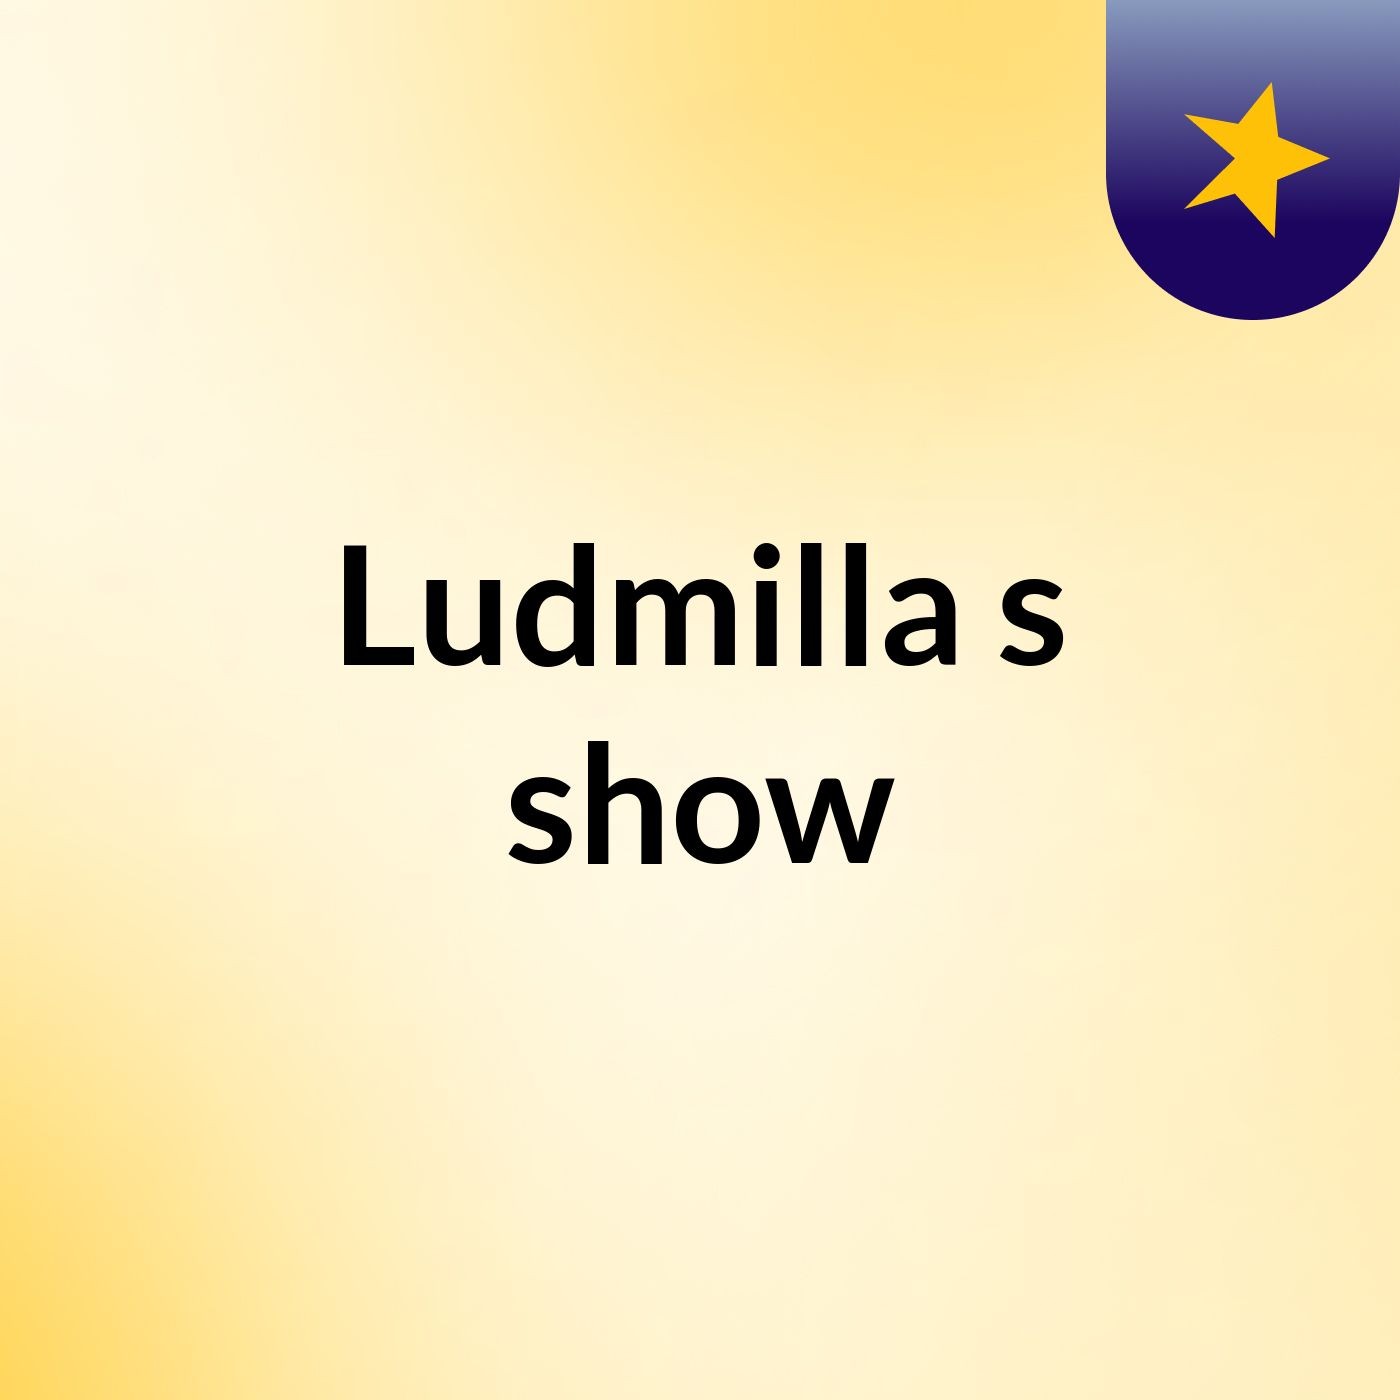 Ludmilla's show